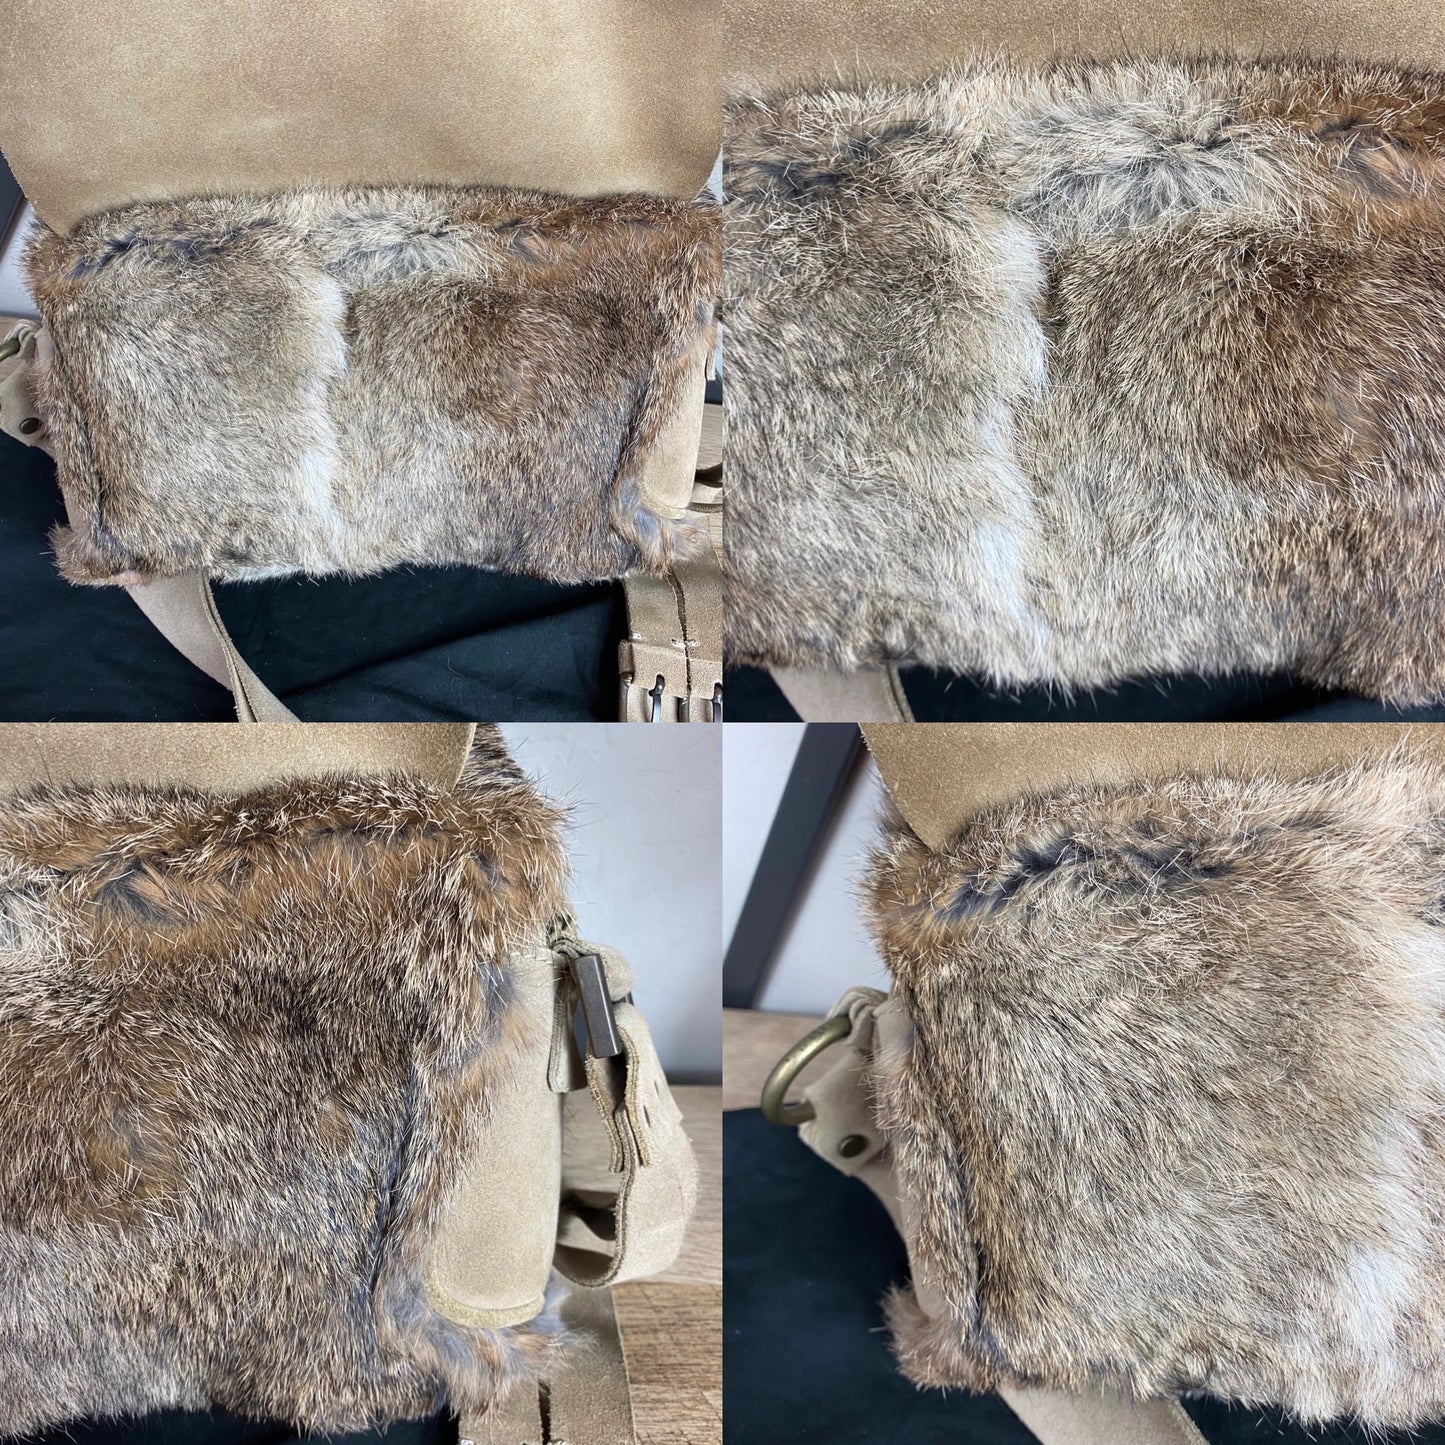 Dolce & Gabbana Vintage Fur Leather Shoulder Bag